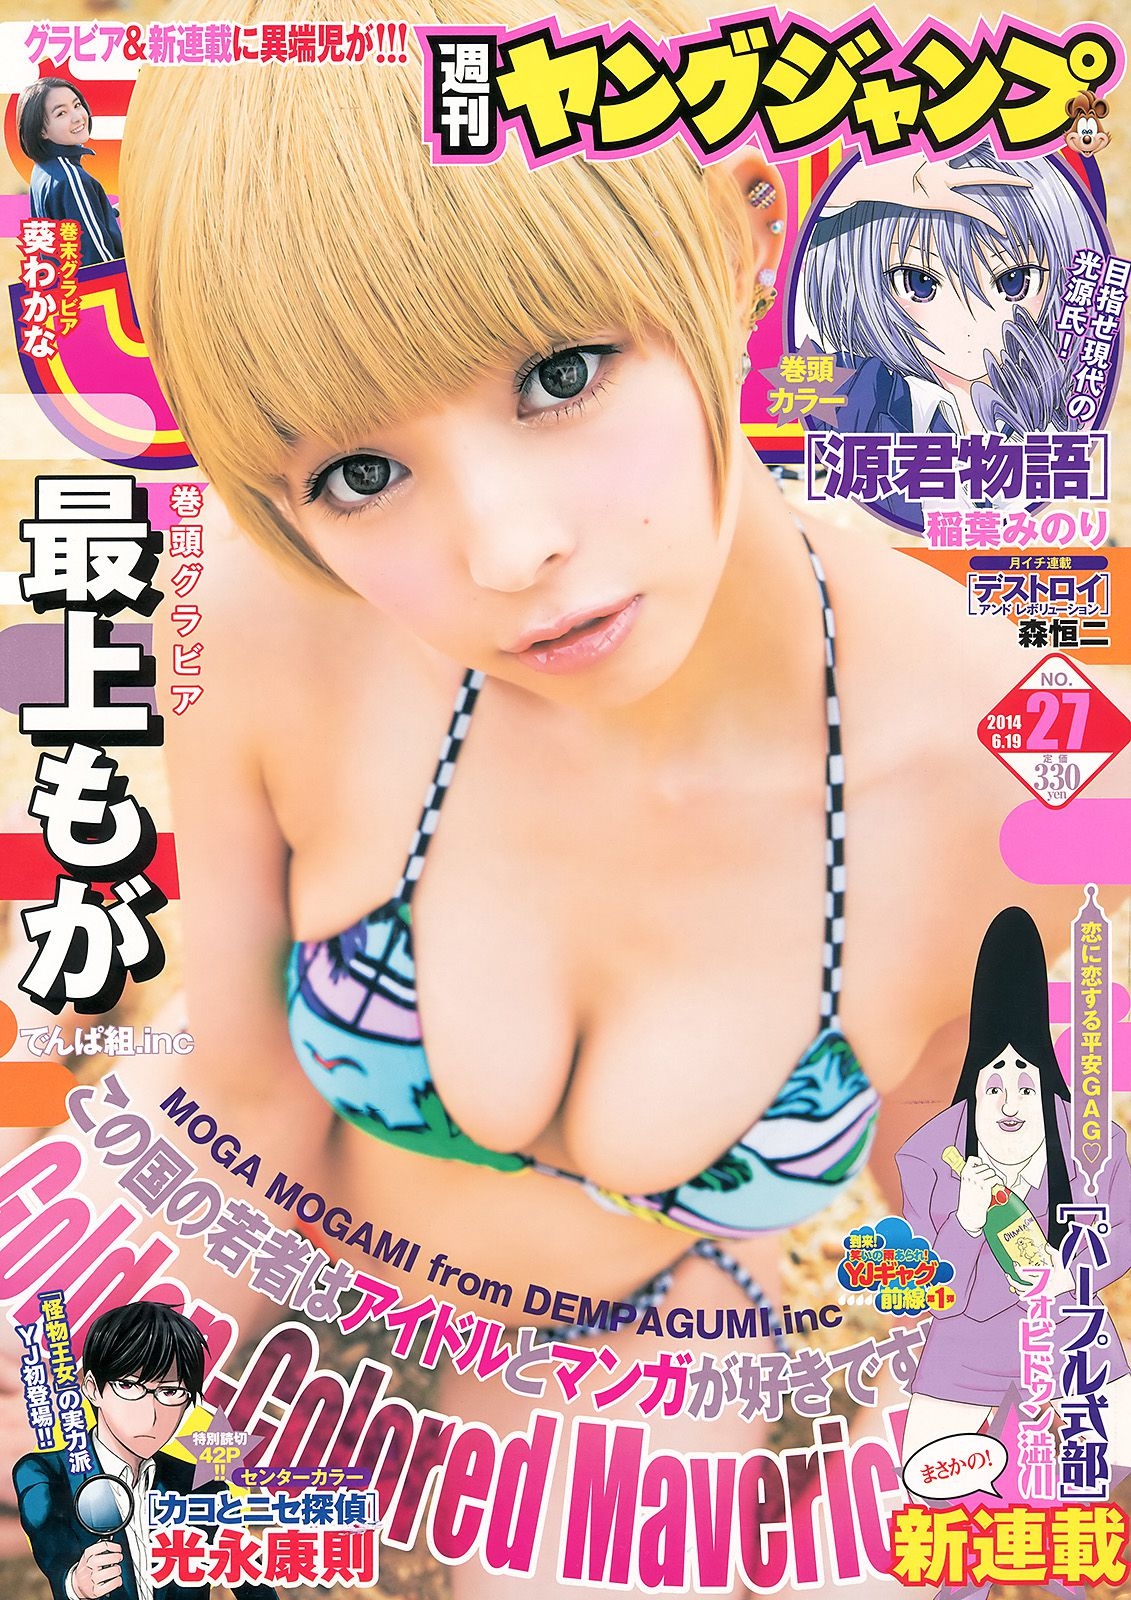 最上もが 葵わかな [Weekly Young Jump] 2014年No.27 写真杂志  第-1张